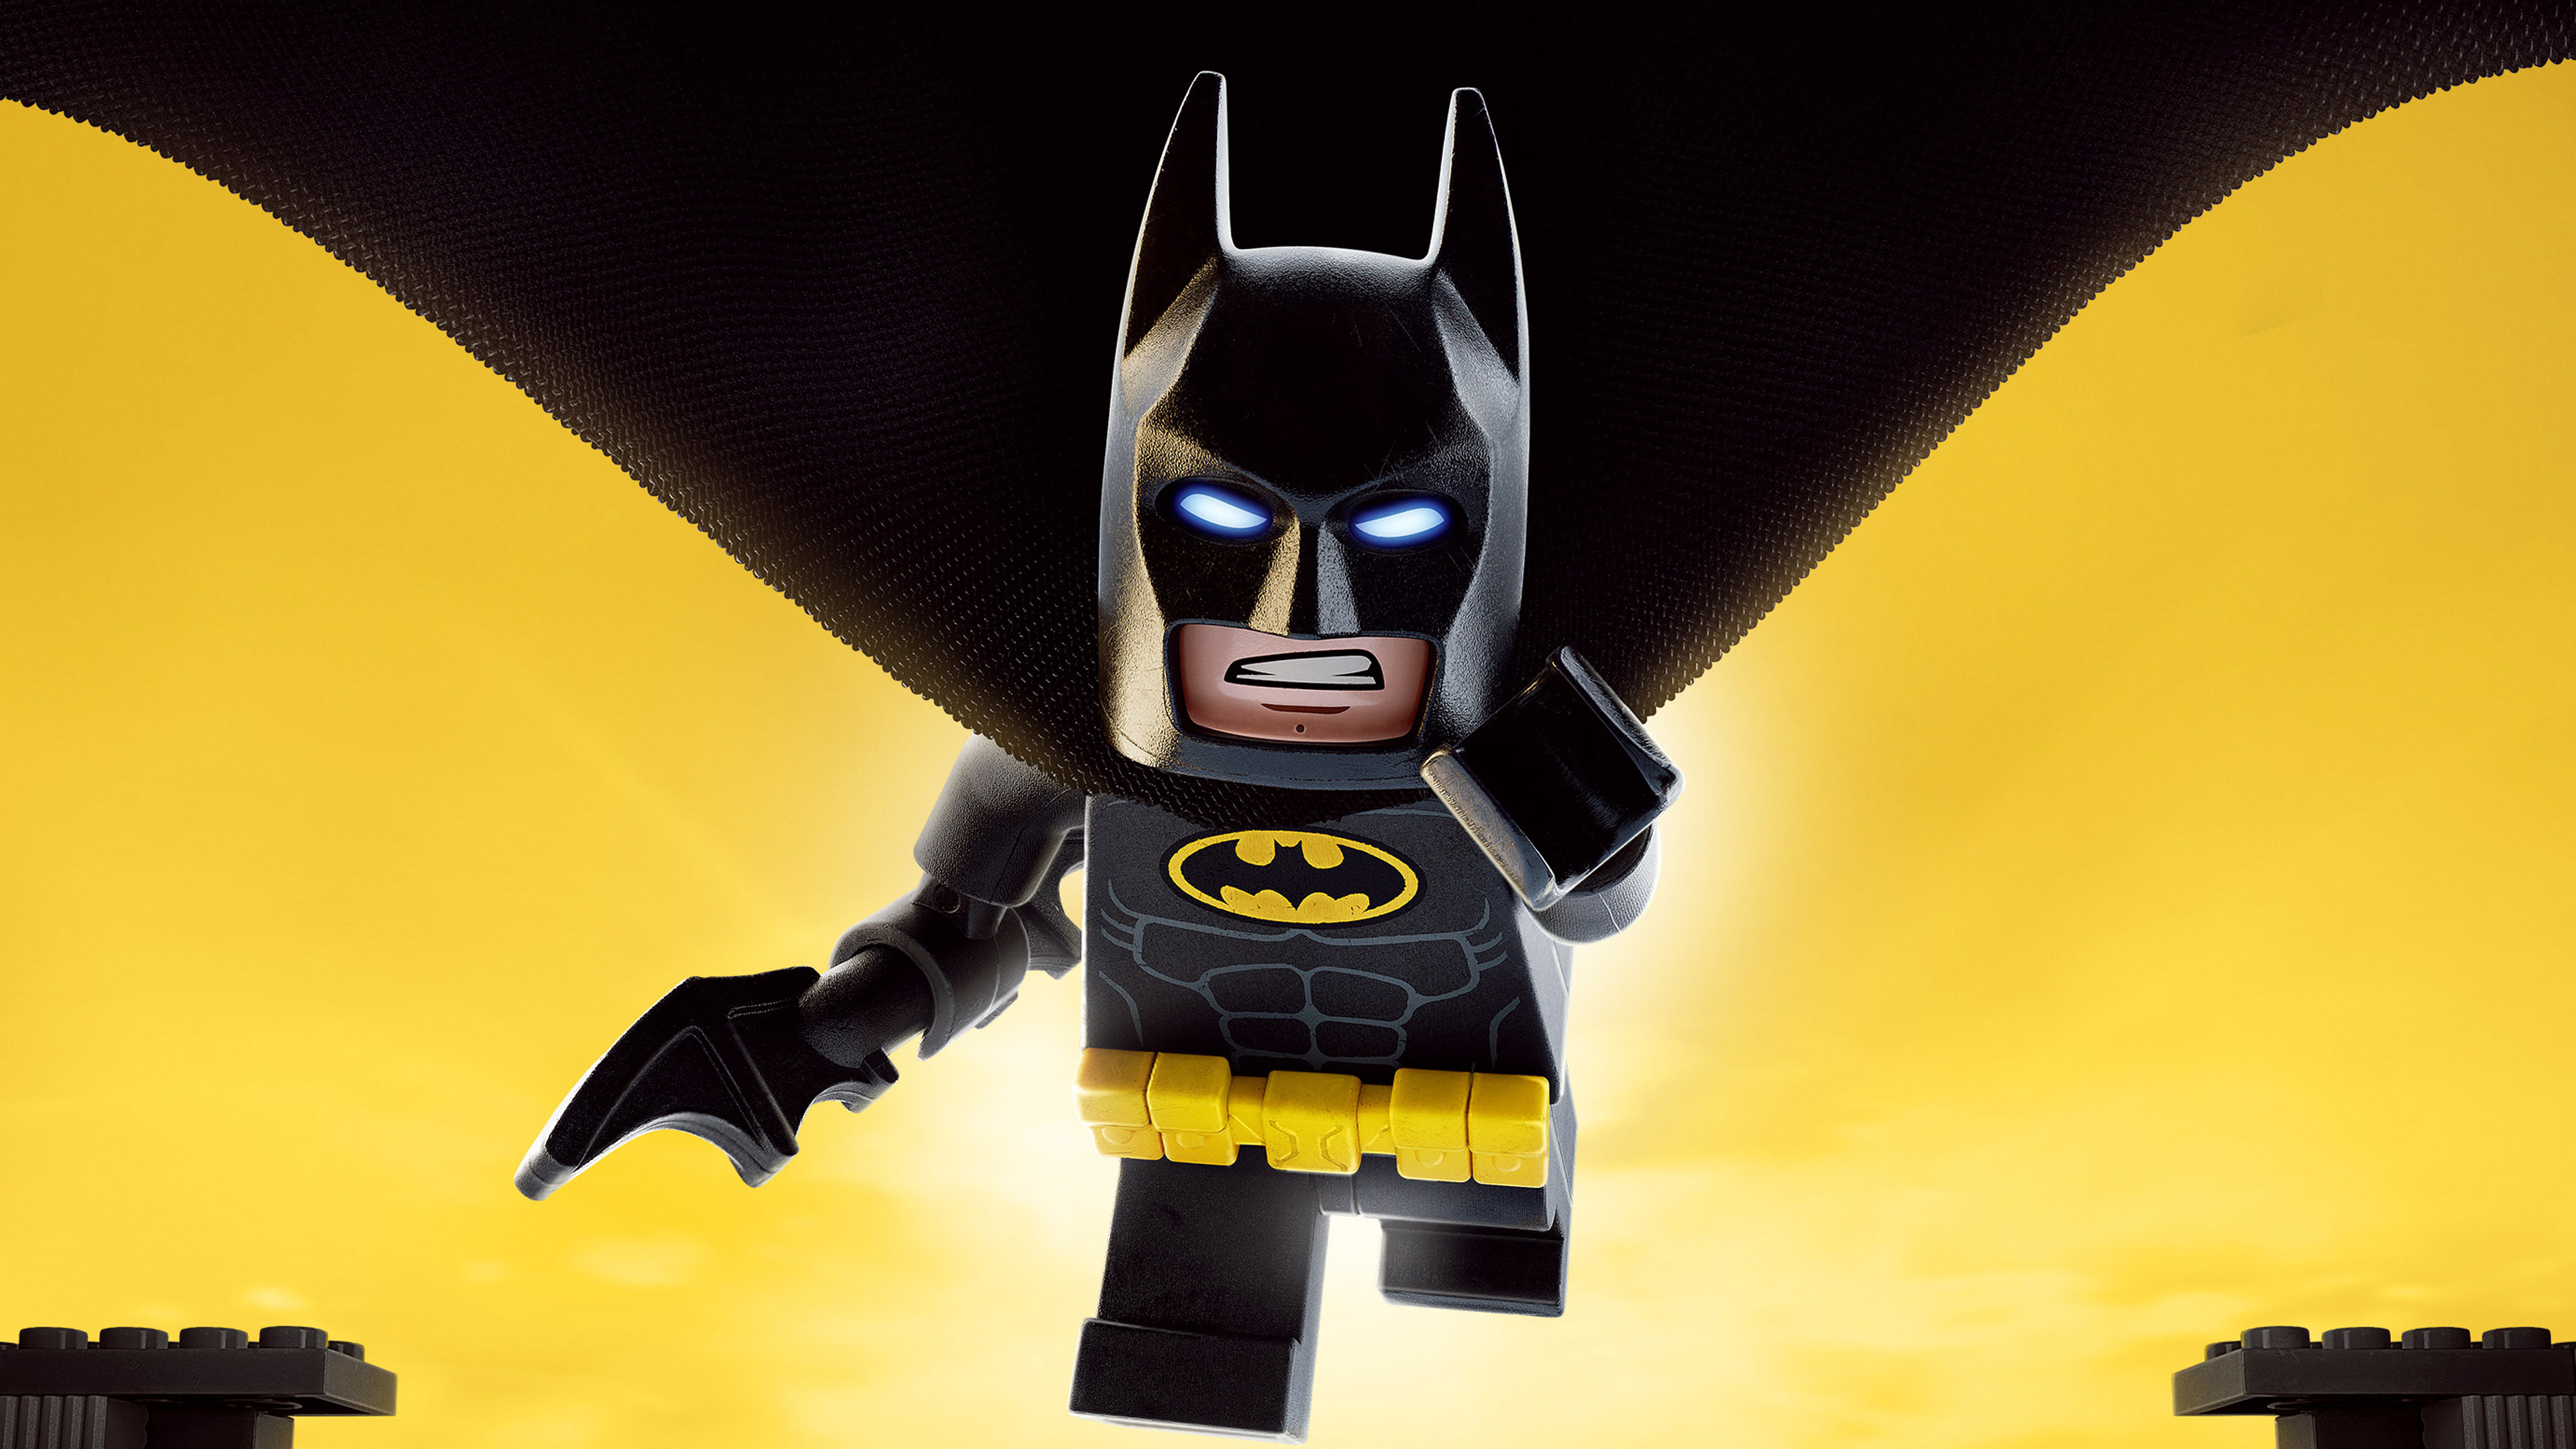 Batman Lego Wallpapers - Wallpaper Cave